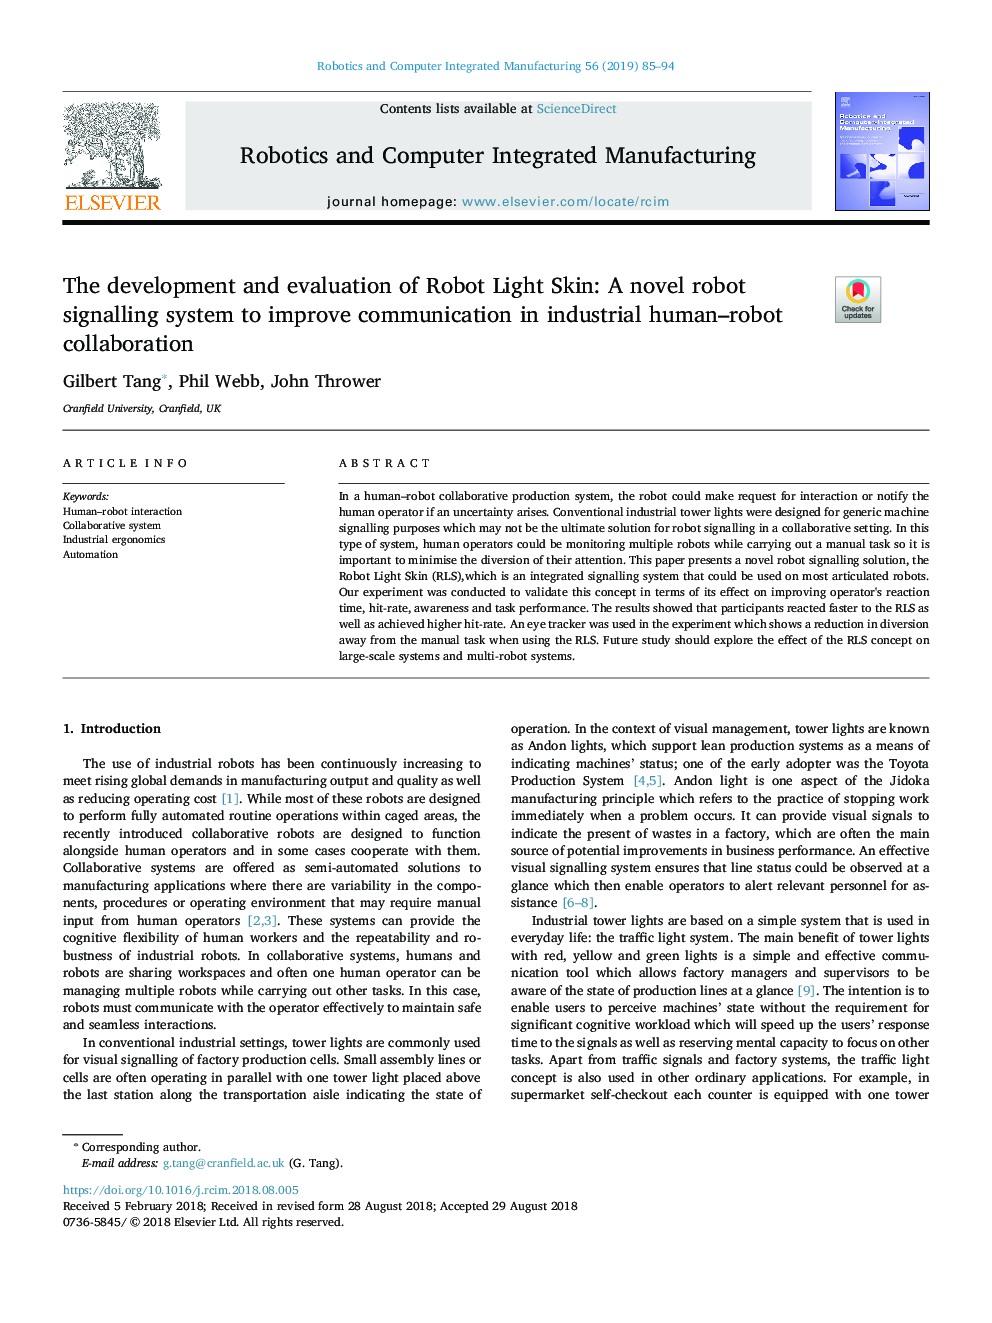 توسعه و ارزیابی پوست ربات نور: یک سیستم سیگنالینگ ربات جدید برای بهبود ارتباطات در همکاری صنعتی ربات انسان